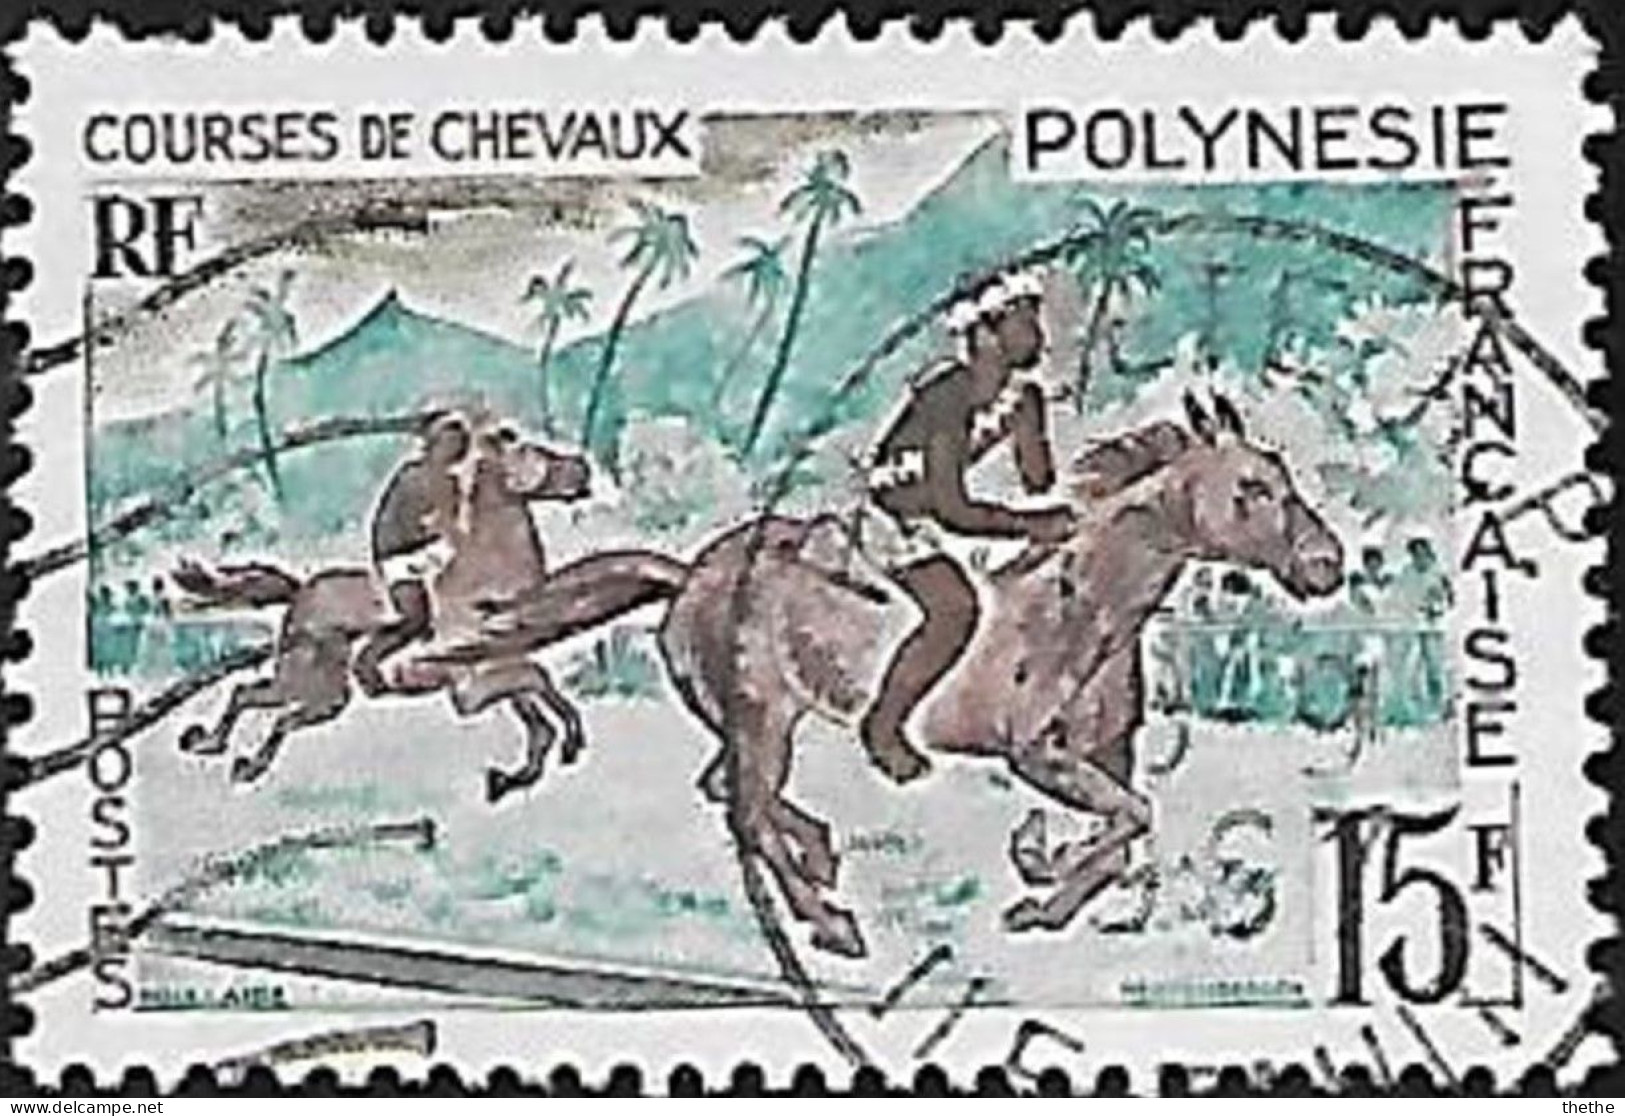 POLYNESIE - Courses De Chevaux - Gebruikt